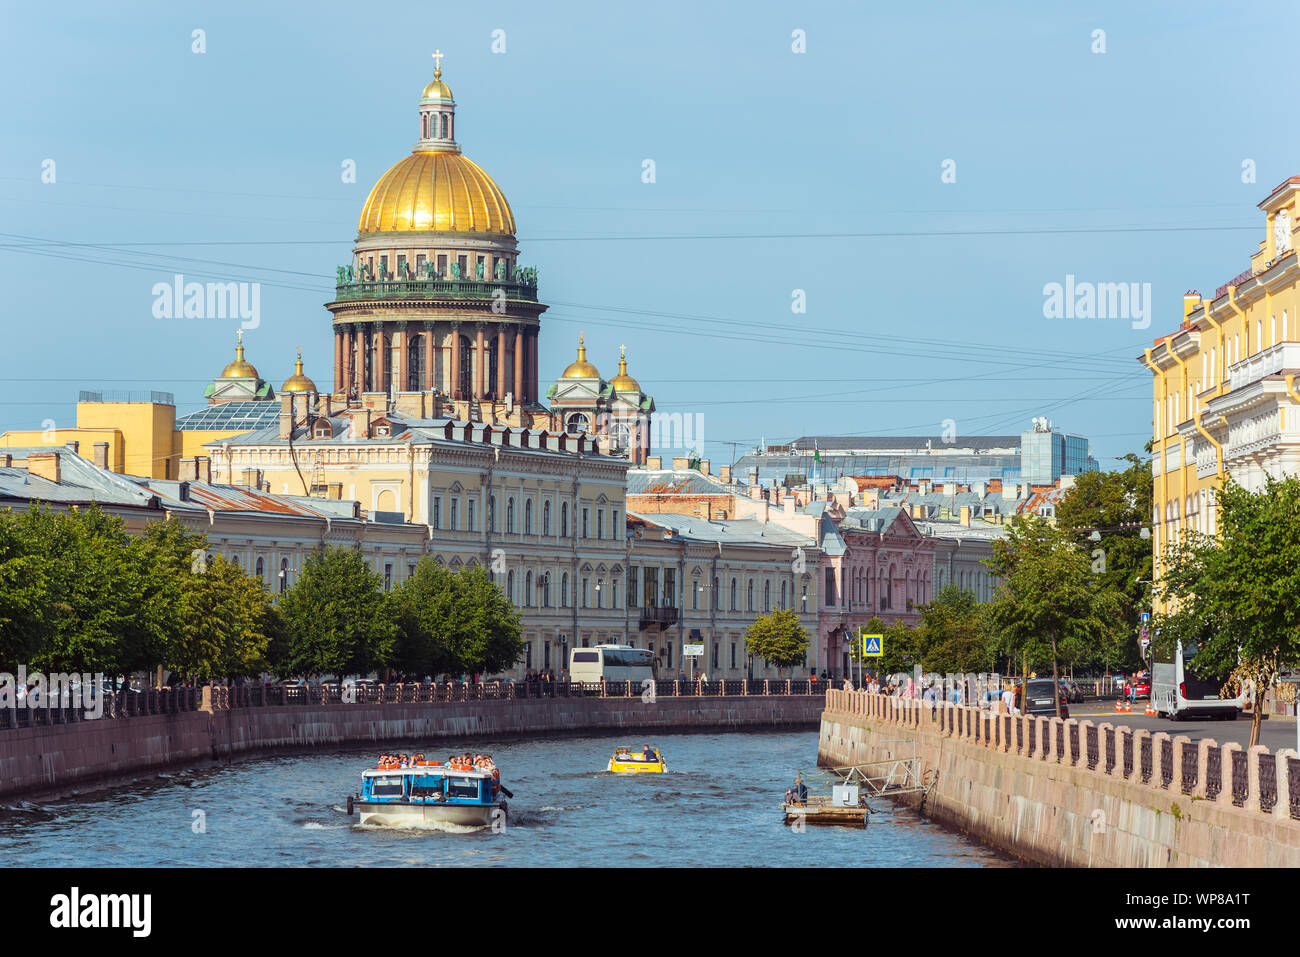 San Petersburgo, Rusia - Agosto 18, 2019: la Catedral de San Isaac y la ciudad vieja alberga a lo largo del río Moyka con una excursión en barco. Foto de stock